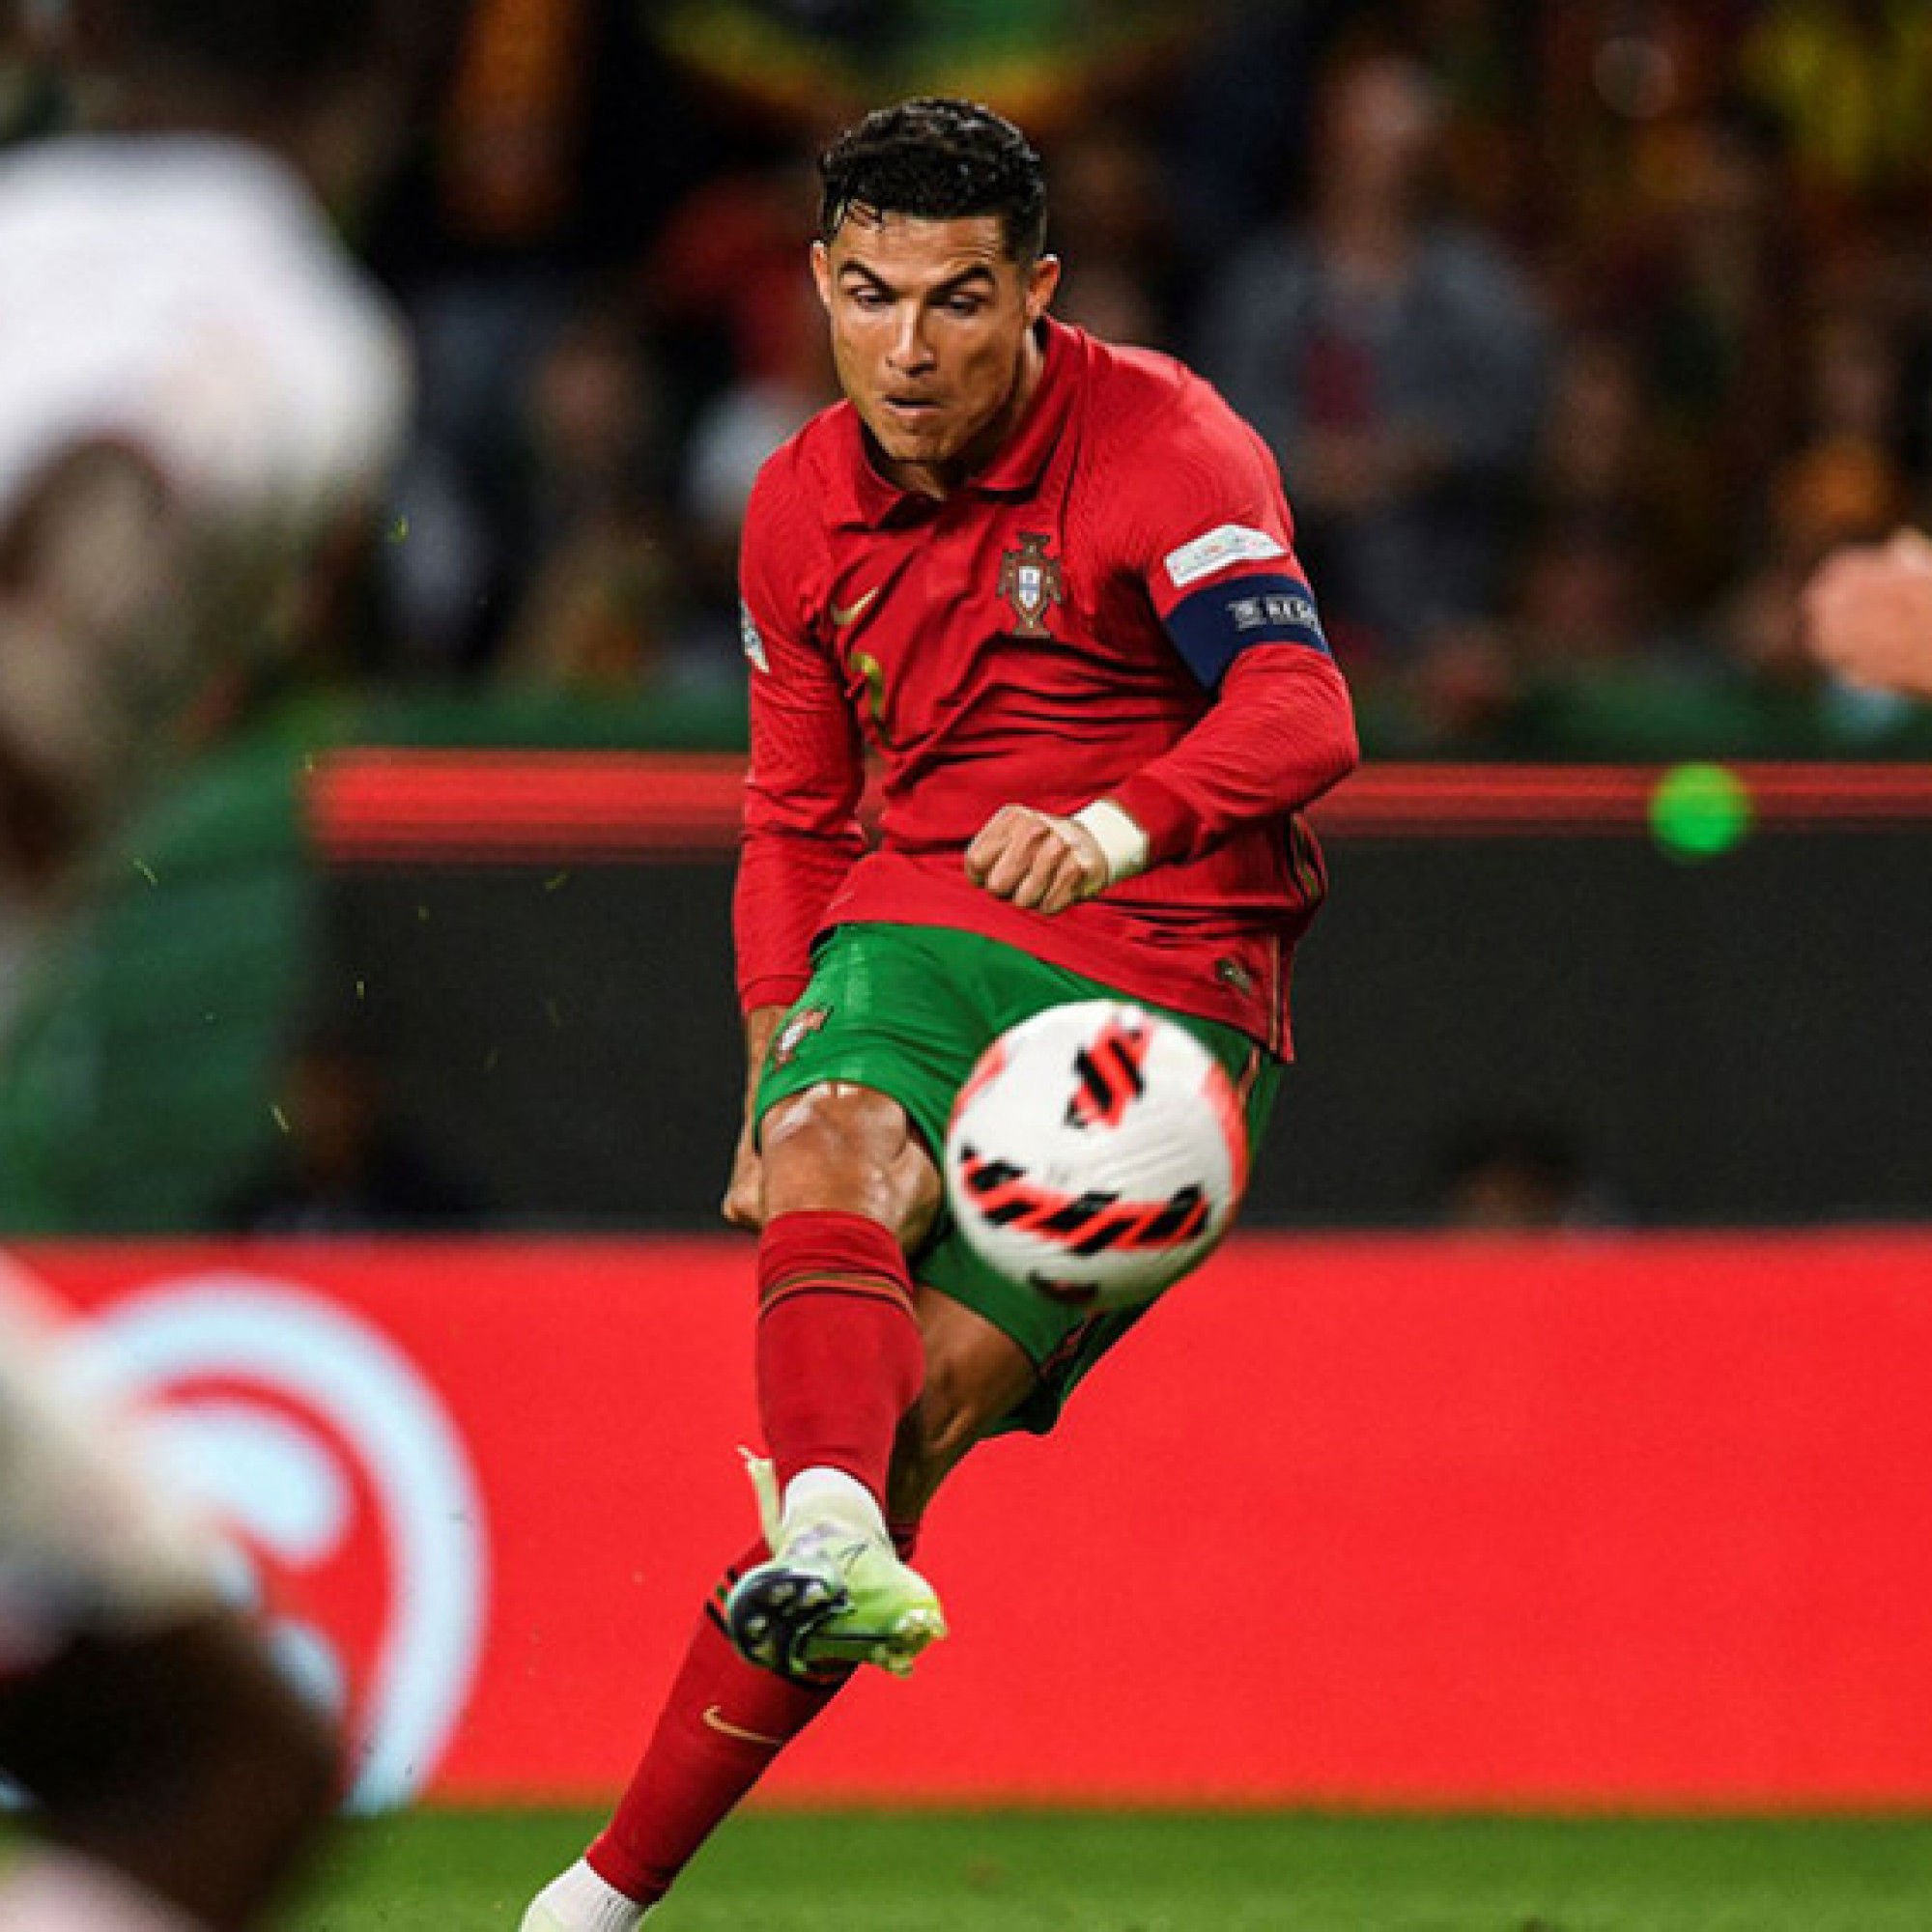  - Trực tiếp bóng đá CH Séc - Bồ Đào Nha: Không có thêm bàn thắng (Nations League) (Hết giờ)